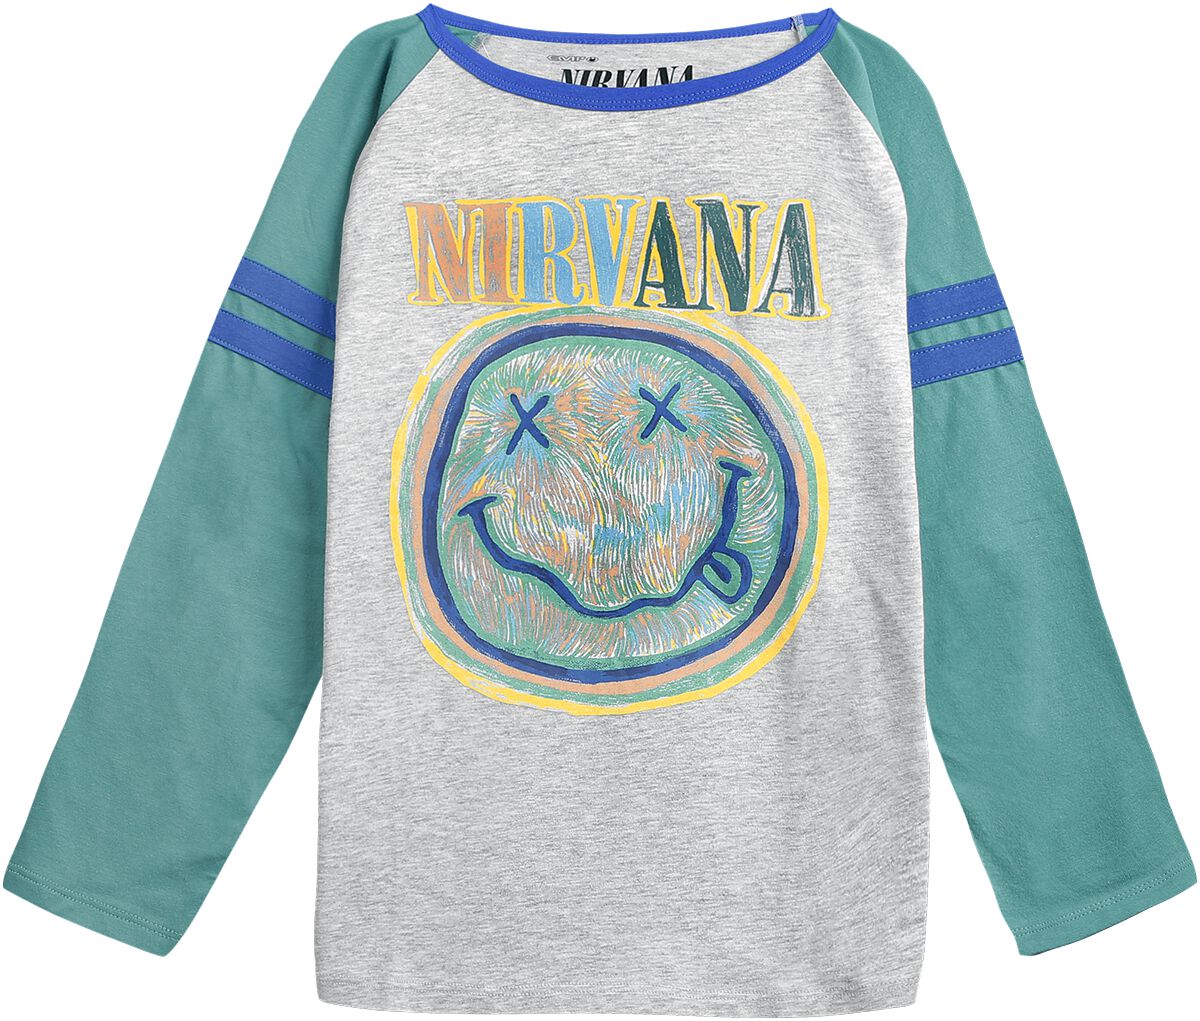 Nirvana Langarmshirt für Kinder - Kids - EMP Signature Collection - für Mädchen & Jungen - grau/türkis  - EMP exklusives Merchandise!